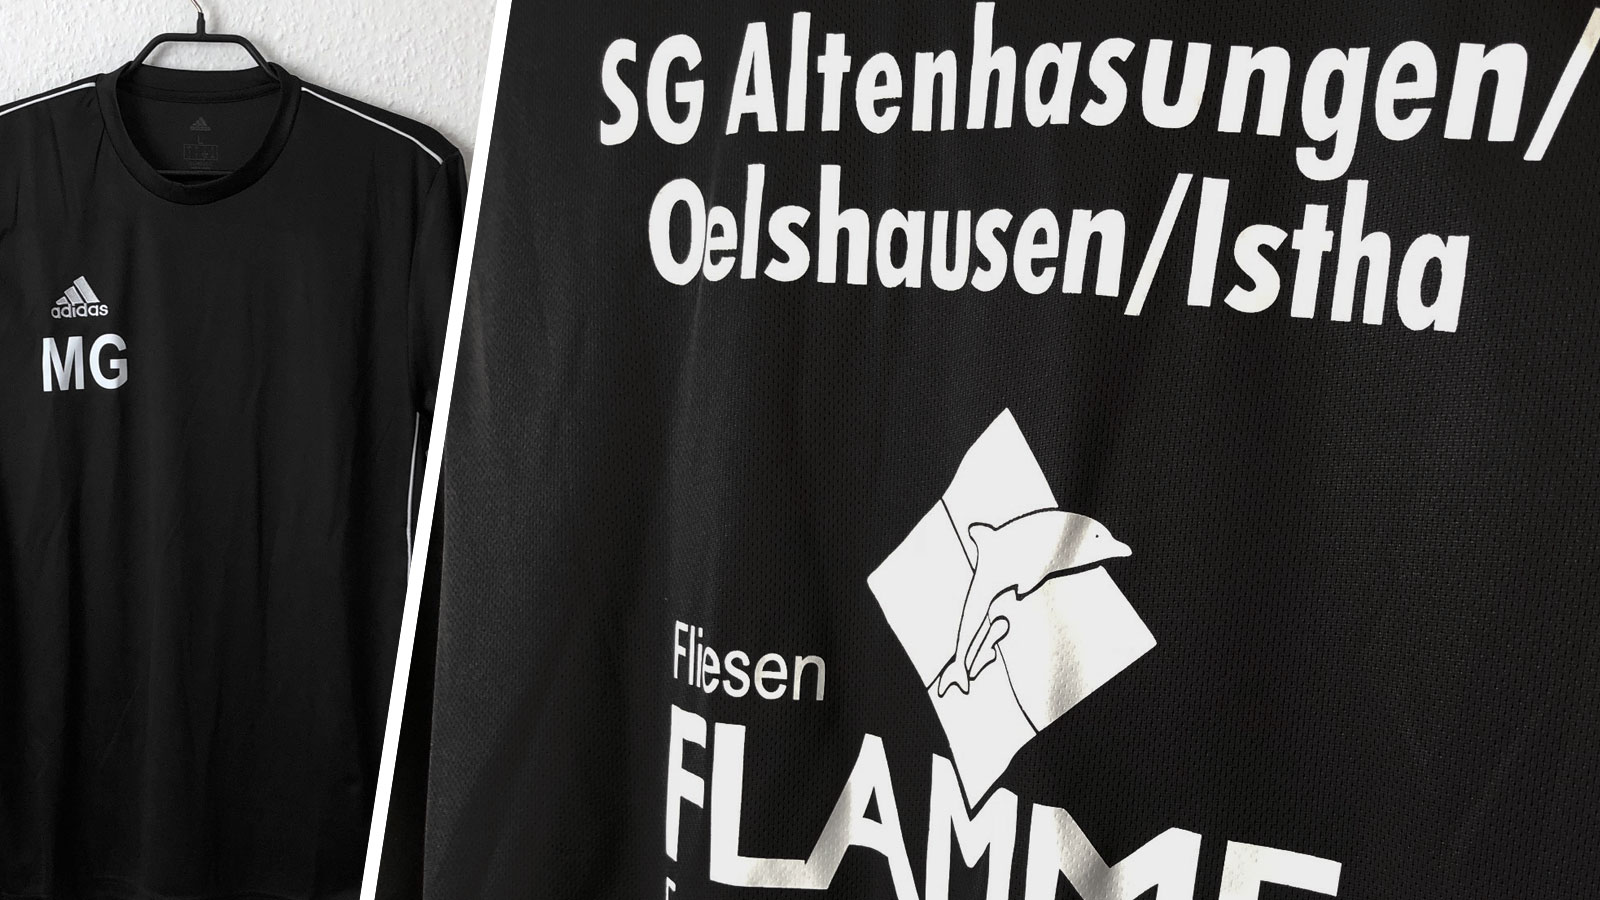 Die adidas Trainingsshirts mit Bedruckung der SG Altenhasungen/Oelshausen/Istha